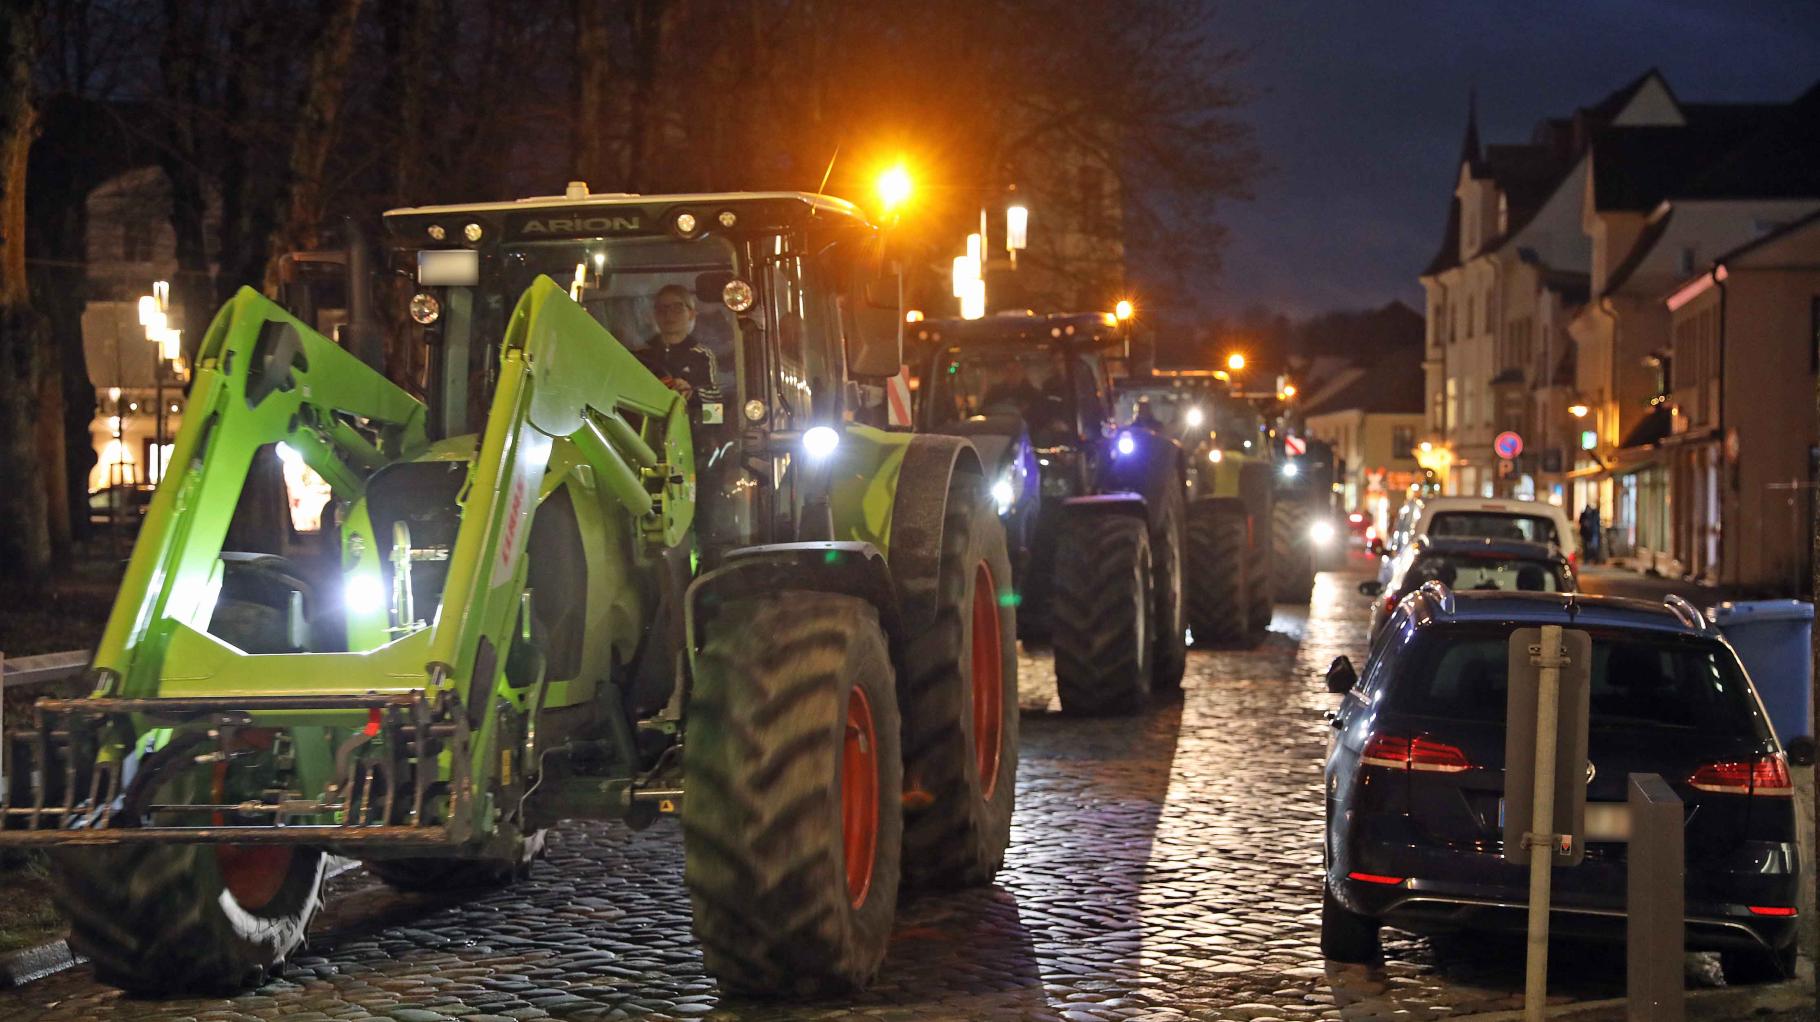 100 Landwirte ziehen mit Traktoren durch Bad Doberan – Verkehr kommt zum Erliegen